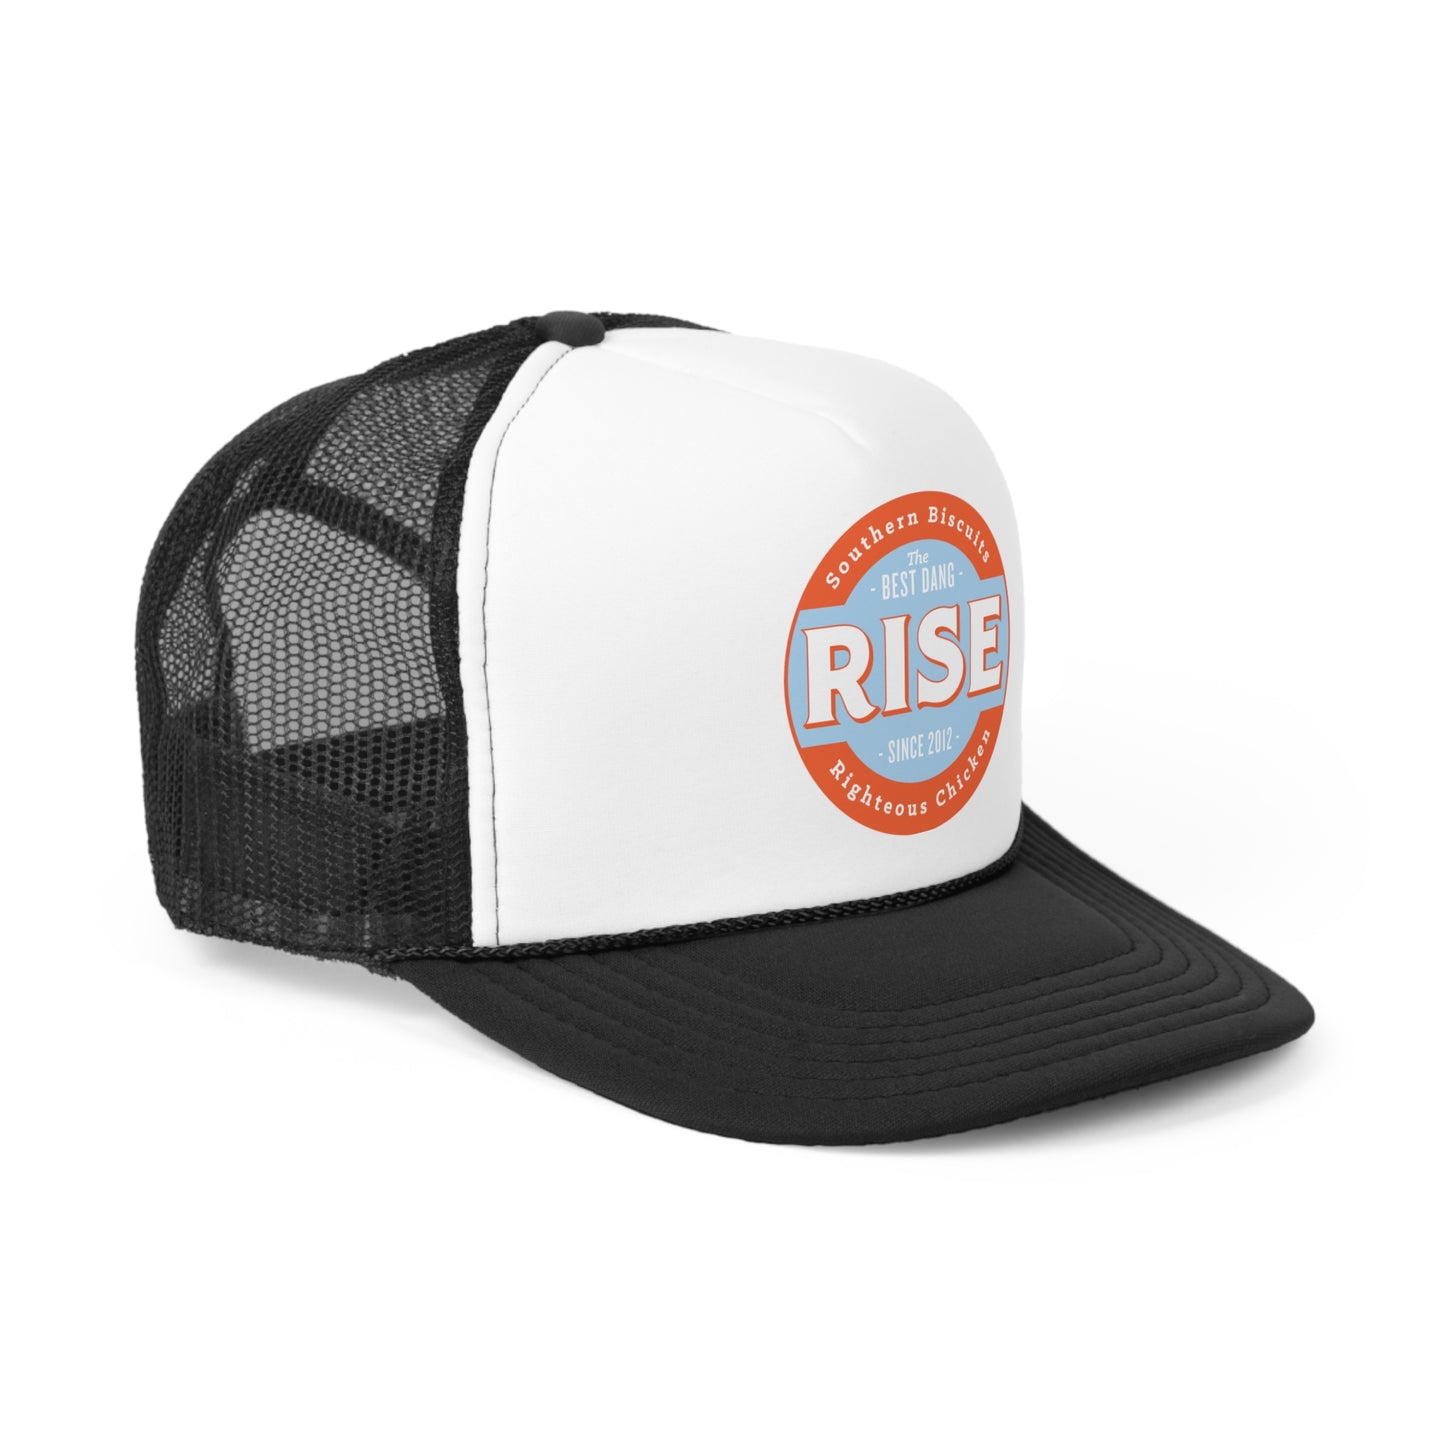 Rise Trucker Caps - Full Logo